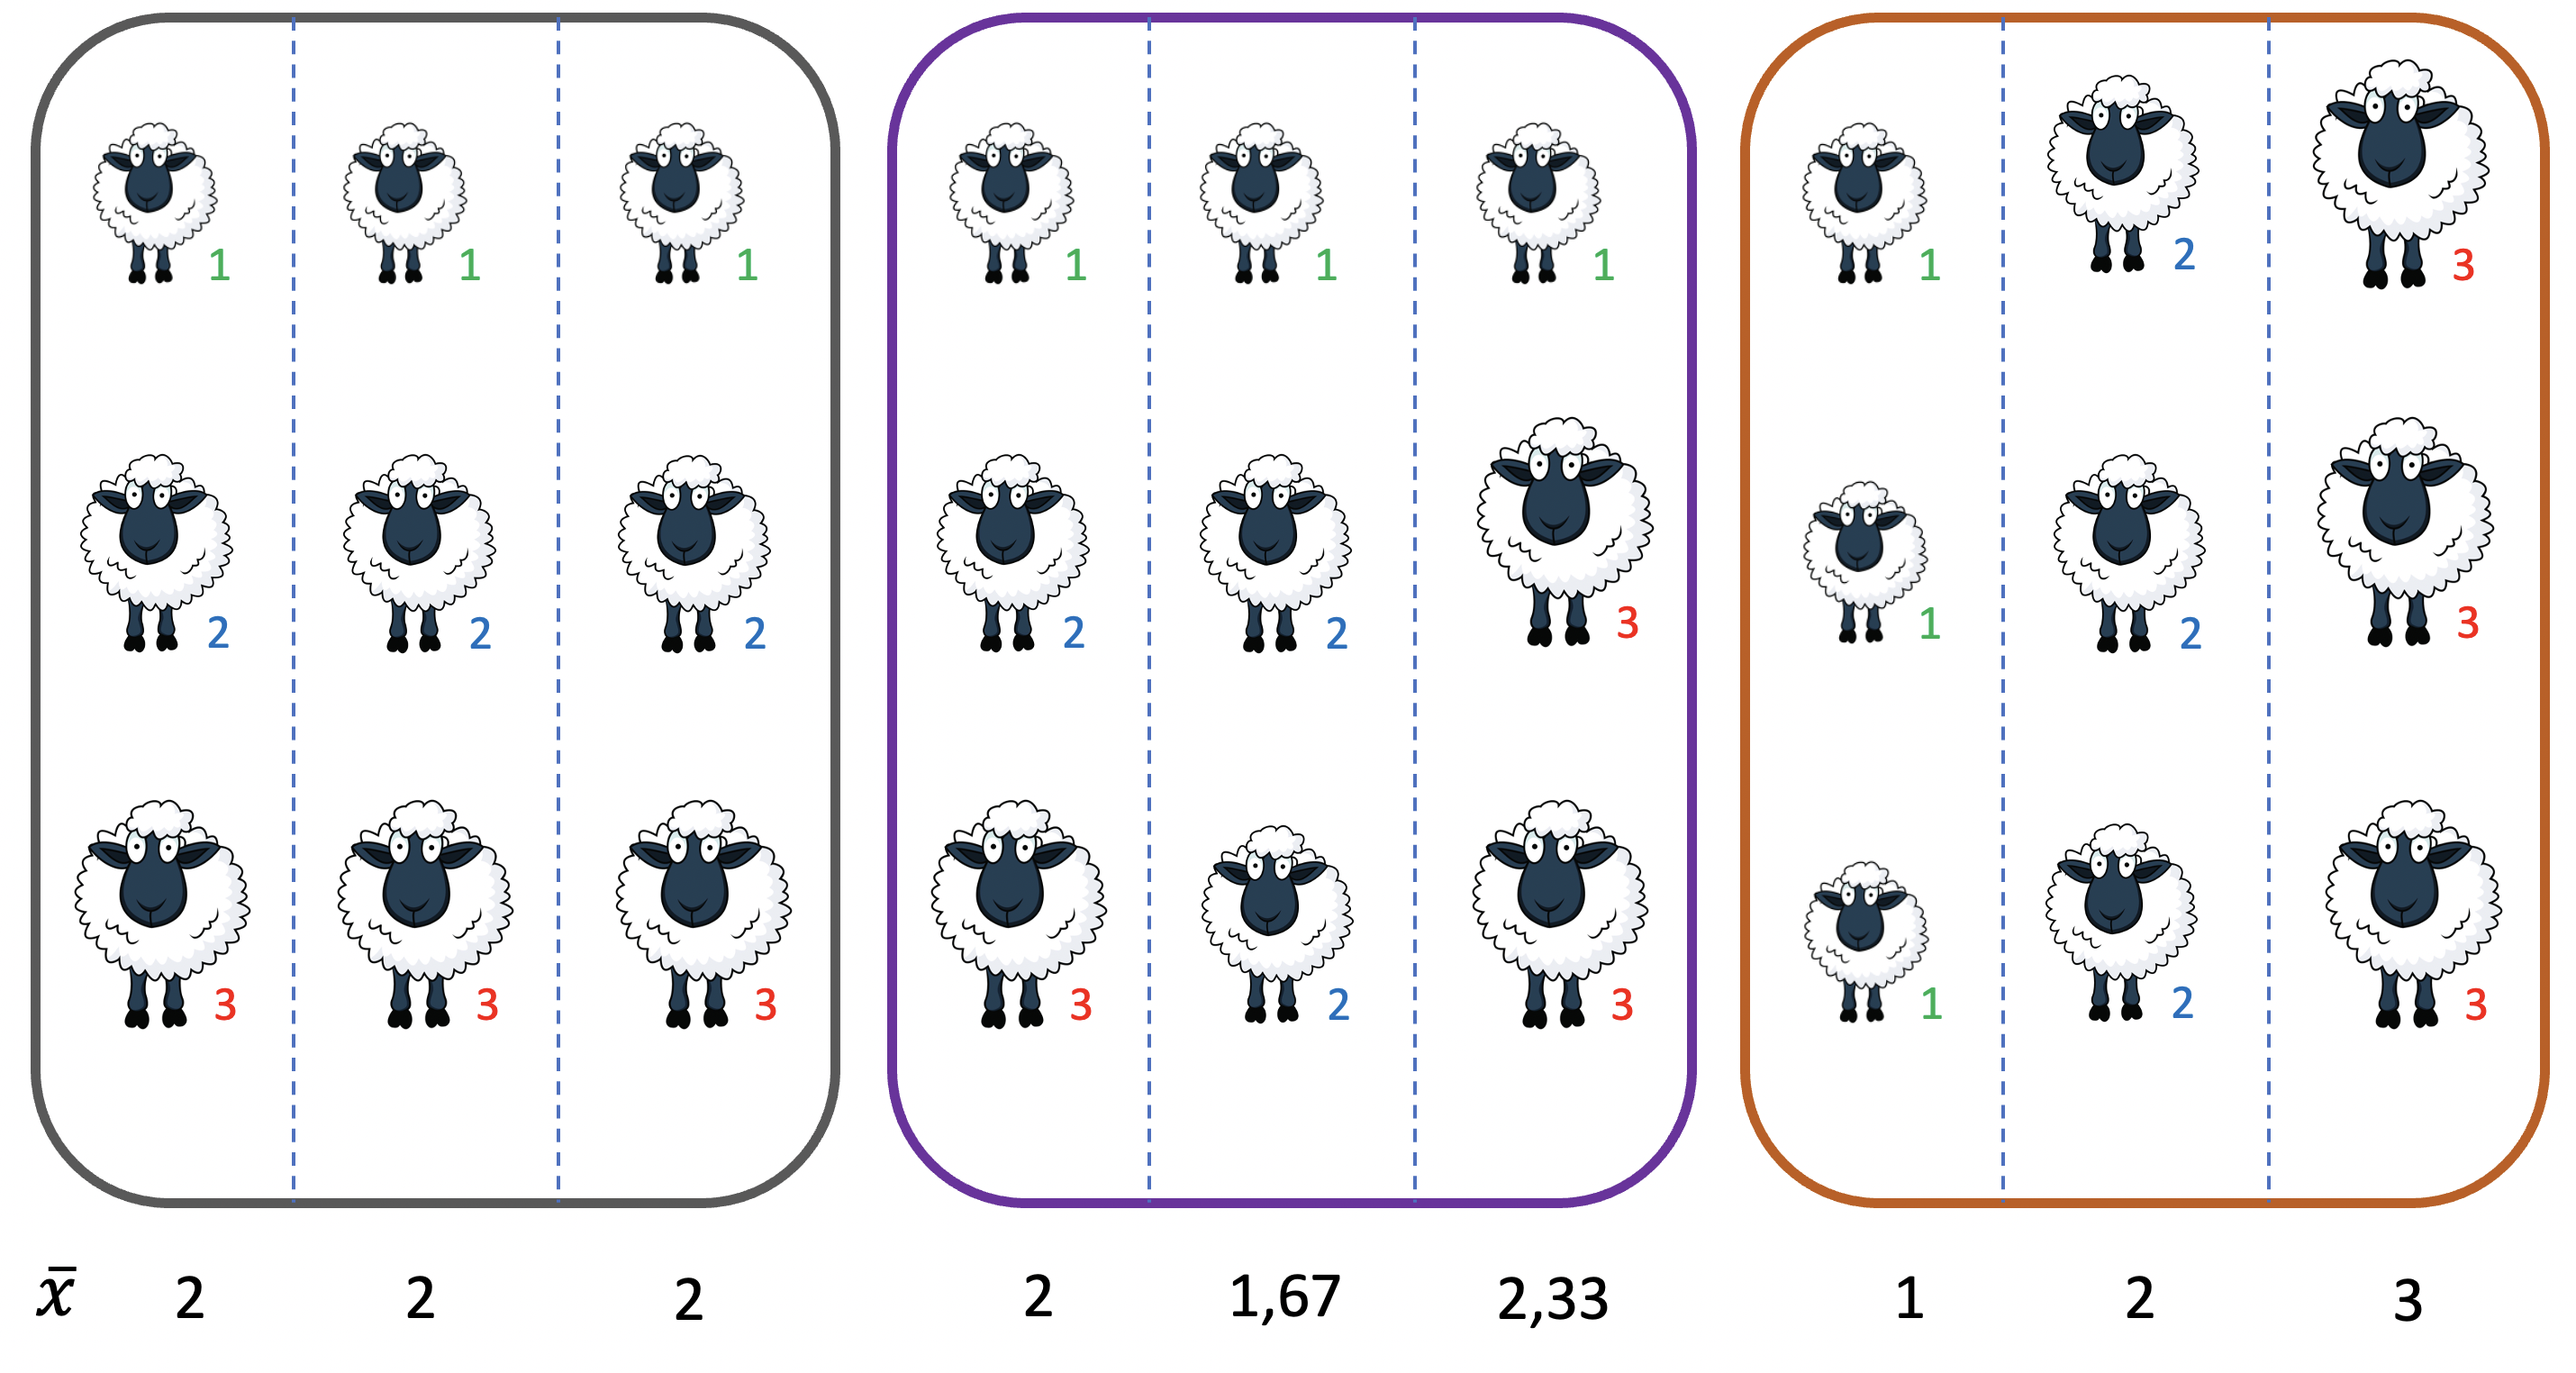 Distribución de la variabilidad dentro de grupos y entre grupos. En cada uno de las tres situaciones hay un mismo número de ovejas de cada uno de los 3 valores (o sea, 3 ovejas de valor 1, 3 de valor 2 y 3 de valor 3). Sin embargo en la situación de la izquierda, cada corral tiene una oveja de cada tipo, por lo que los 3 corrales son idénticos y no existe por lo tanto variabilidad entre grupos (corrales), concentrándose toda la variabilidad dentro de los grupos. En la situación de la derecha nos encontramos con que no existe variación dentro de los corrales (ya que el primero tiene todas las ovejas con valor 1, el del medio todas con valor 2 y el último todas con valor 3), por lo que toda la variación está concentrada entre los grupos. La situación del medio es intermedia, las ovejas asignadas al azar, con variabilidad dentro y variabilidad entre. En la línea de abajo, la media de cada grupo (diseño de las ovejas de http://cliparts.co/clipart/2377087 Fuente: Cliparts.co).